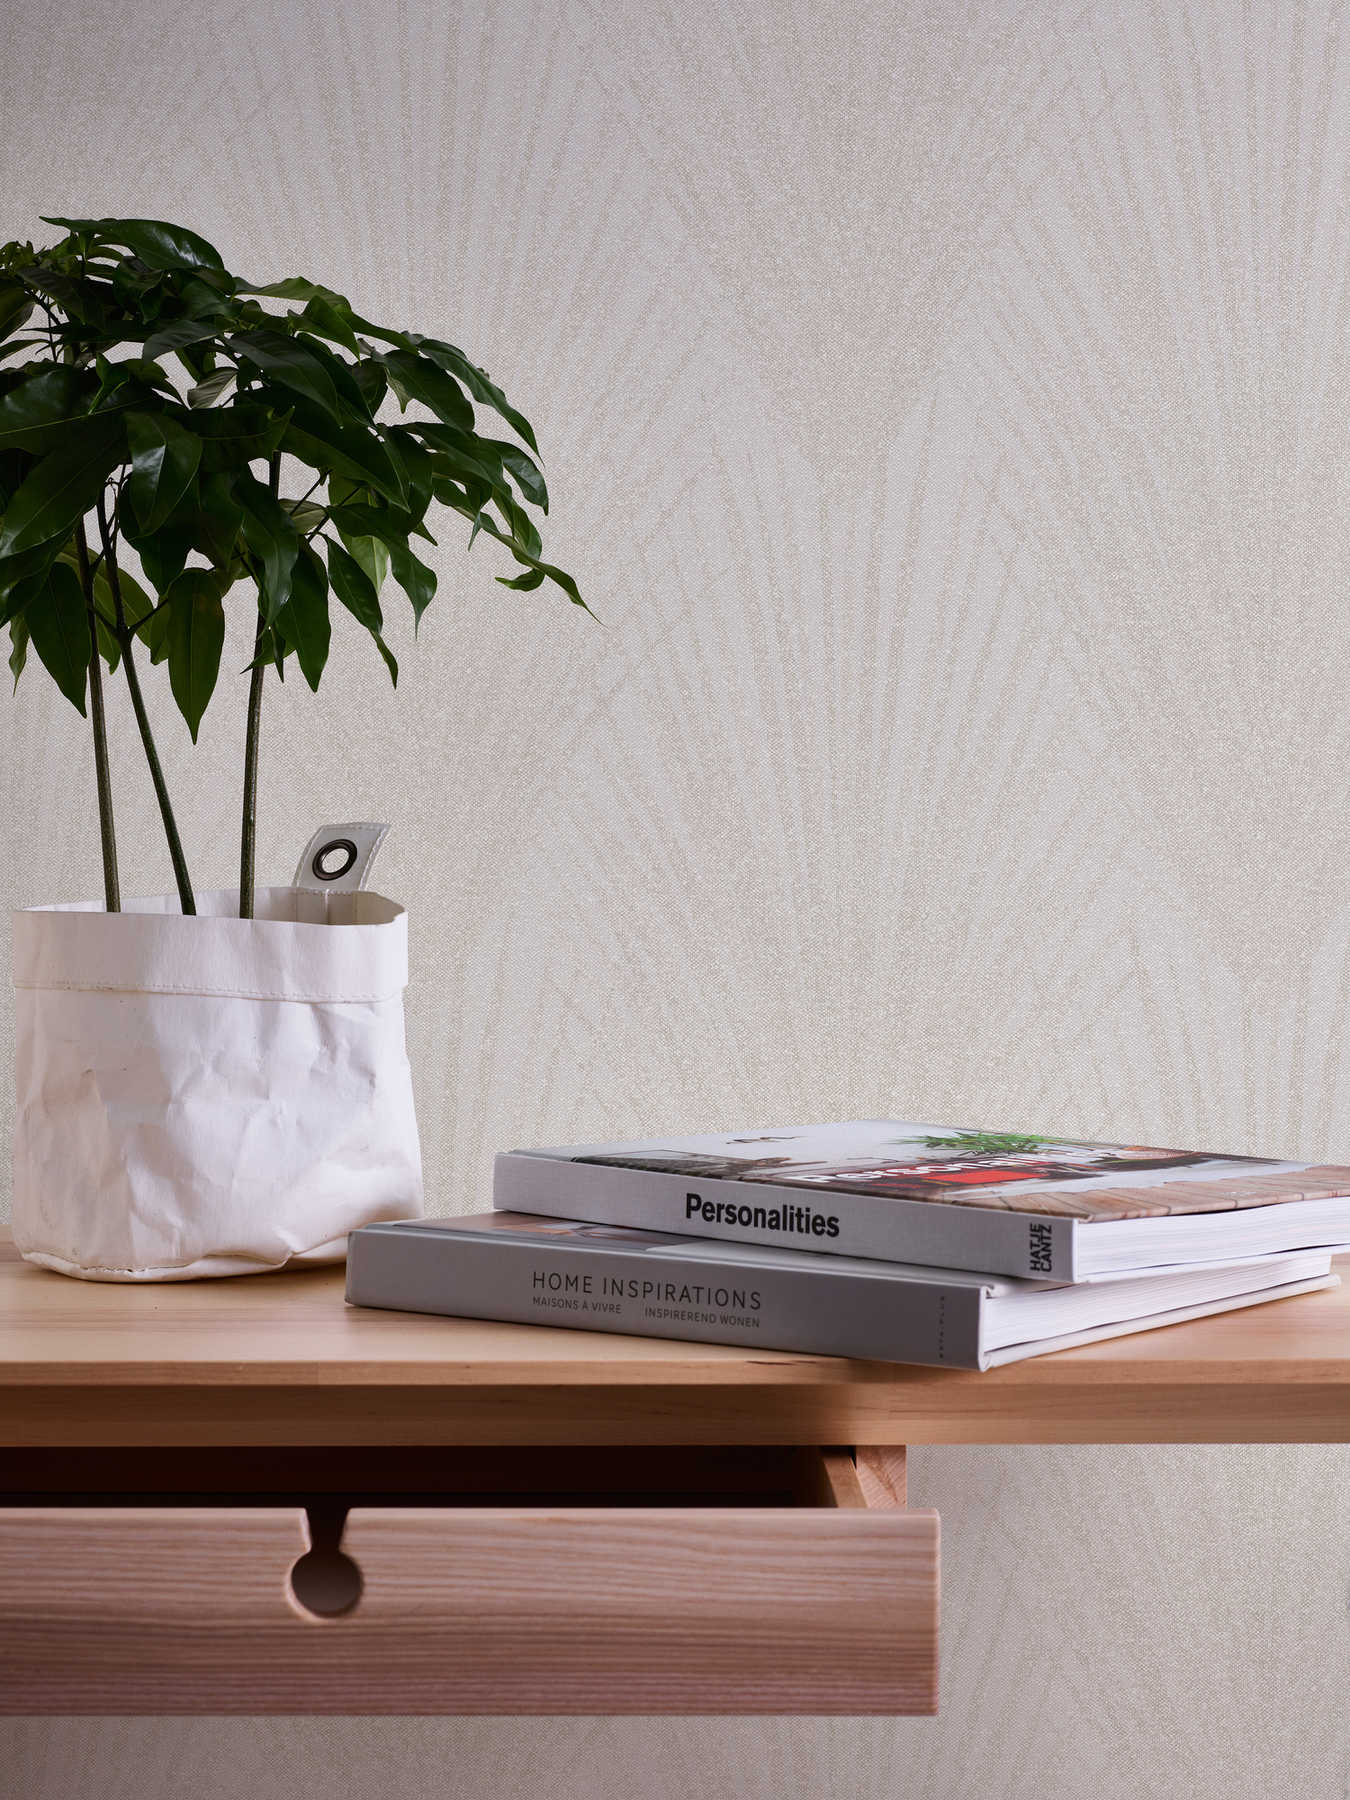             Fern leaf pattern wallpaper abstract design - cream, beige
        